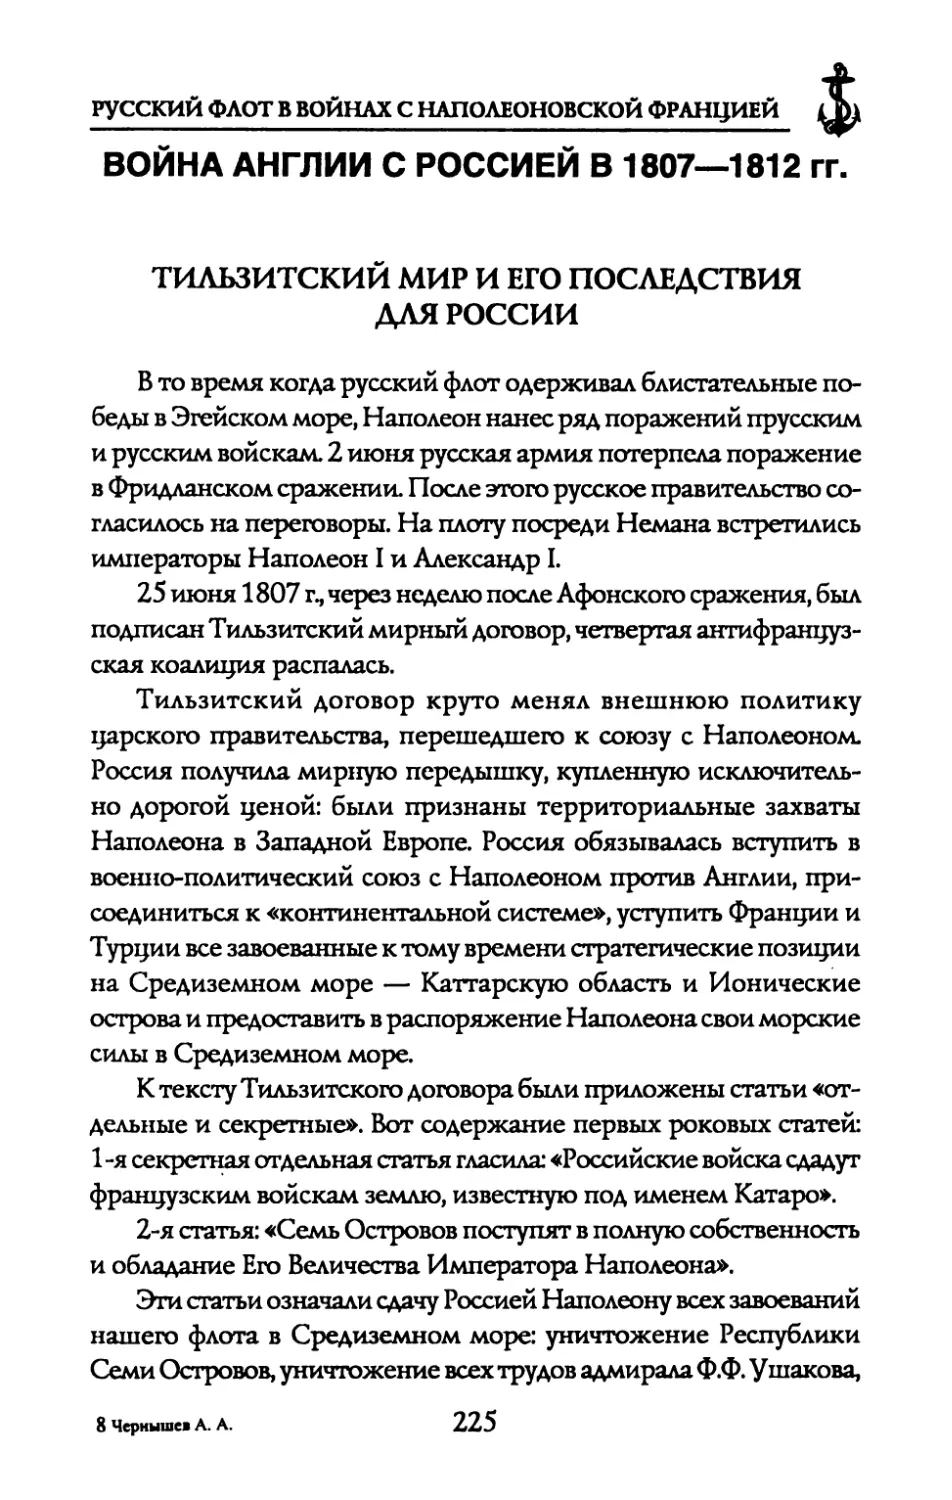 ВОЙНА АНГЛИИ С РОССИЕЙ В 1807—1812 гг.